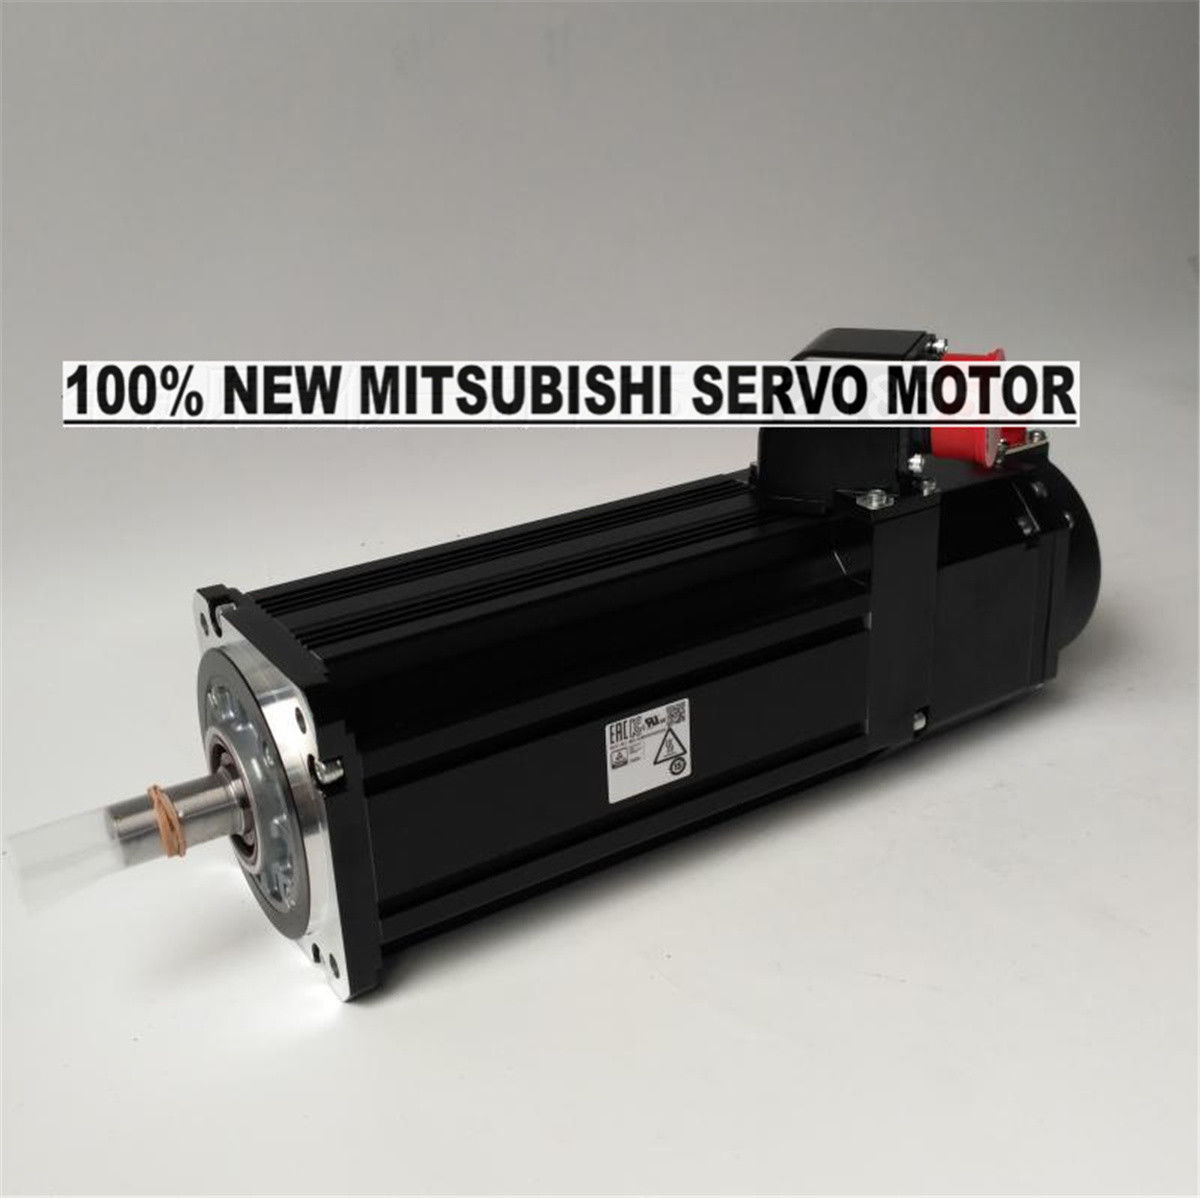 NEW Mitsubishi Servo Motor HG-JR203 in box HGJR203 - Click Image to Close